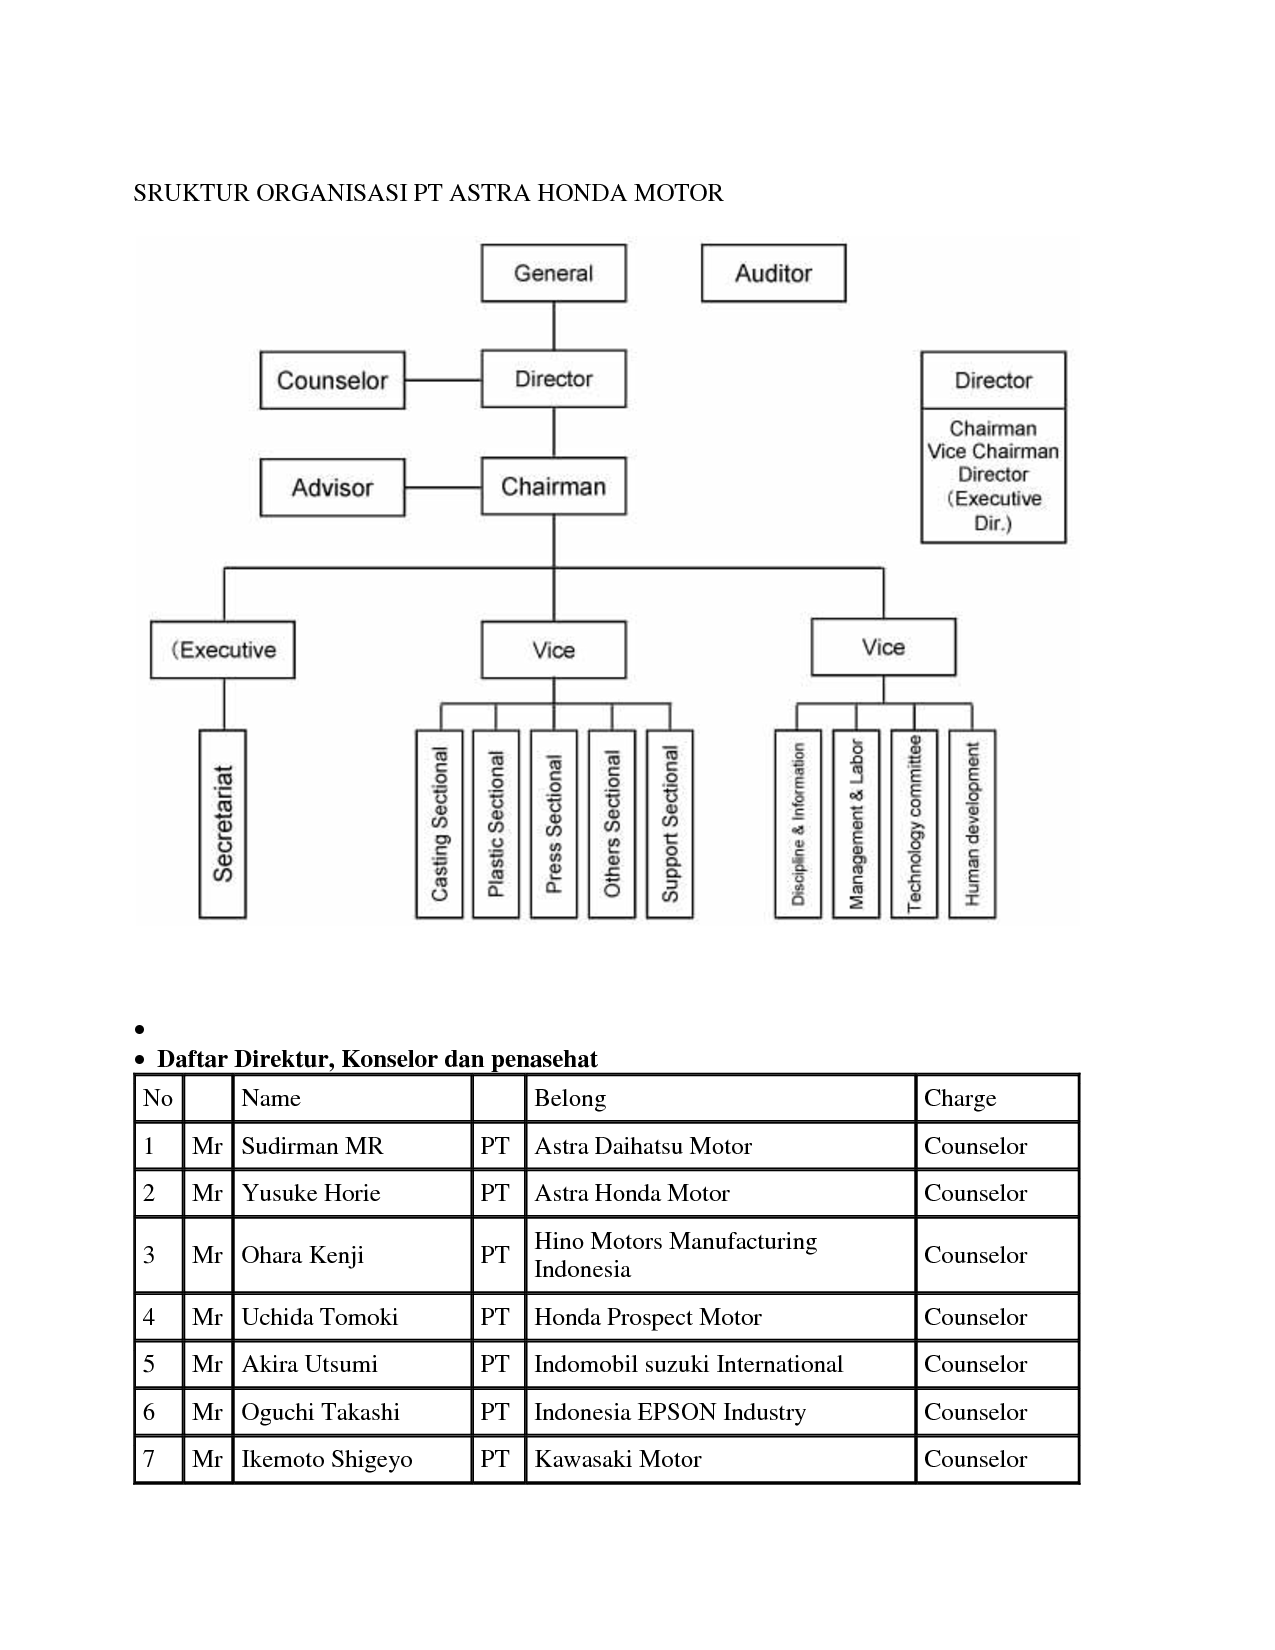 Struktur organisasi perusahaan pt.astra honda motor #2